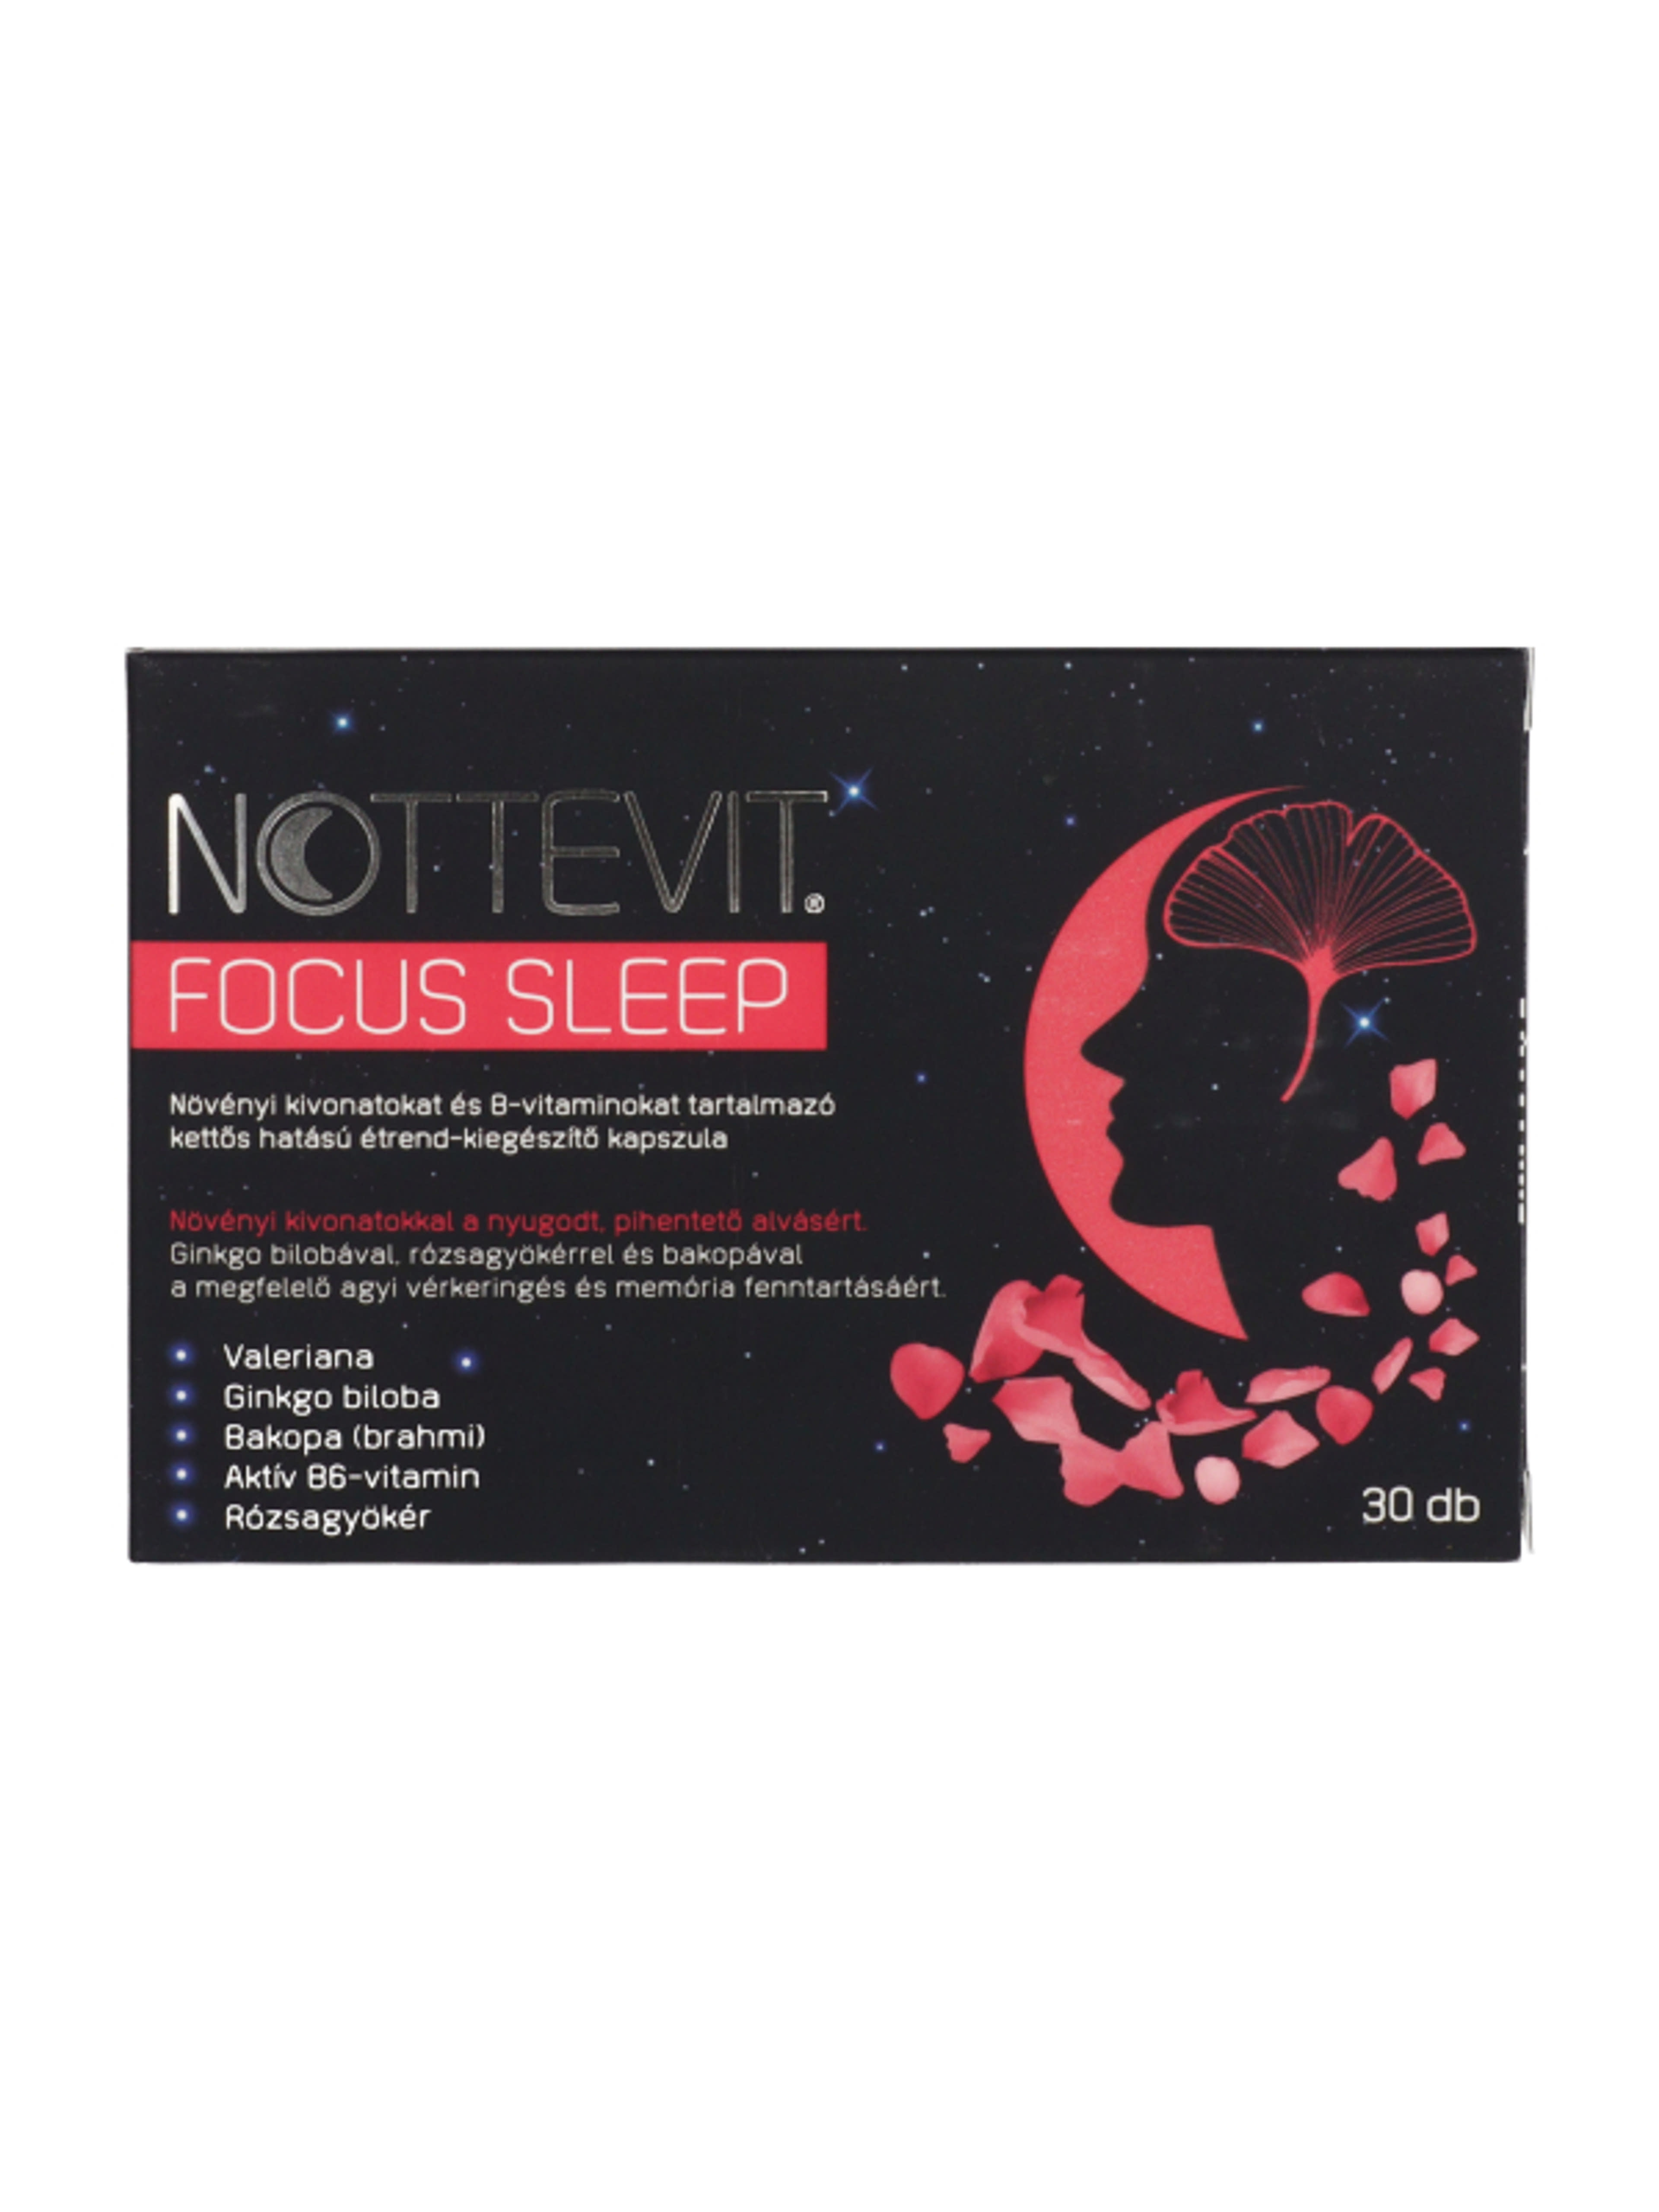 Nottevit Focus Sleep kapszula - 30 db-1